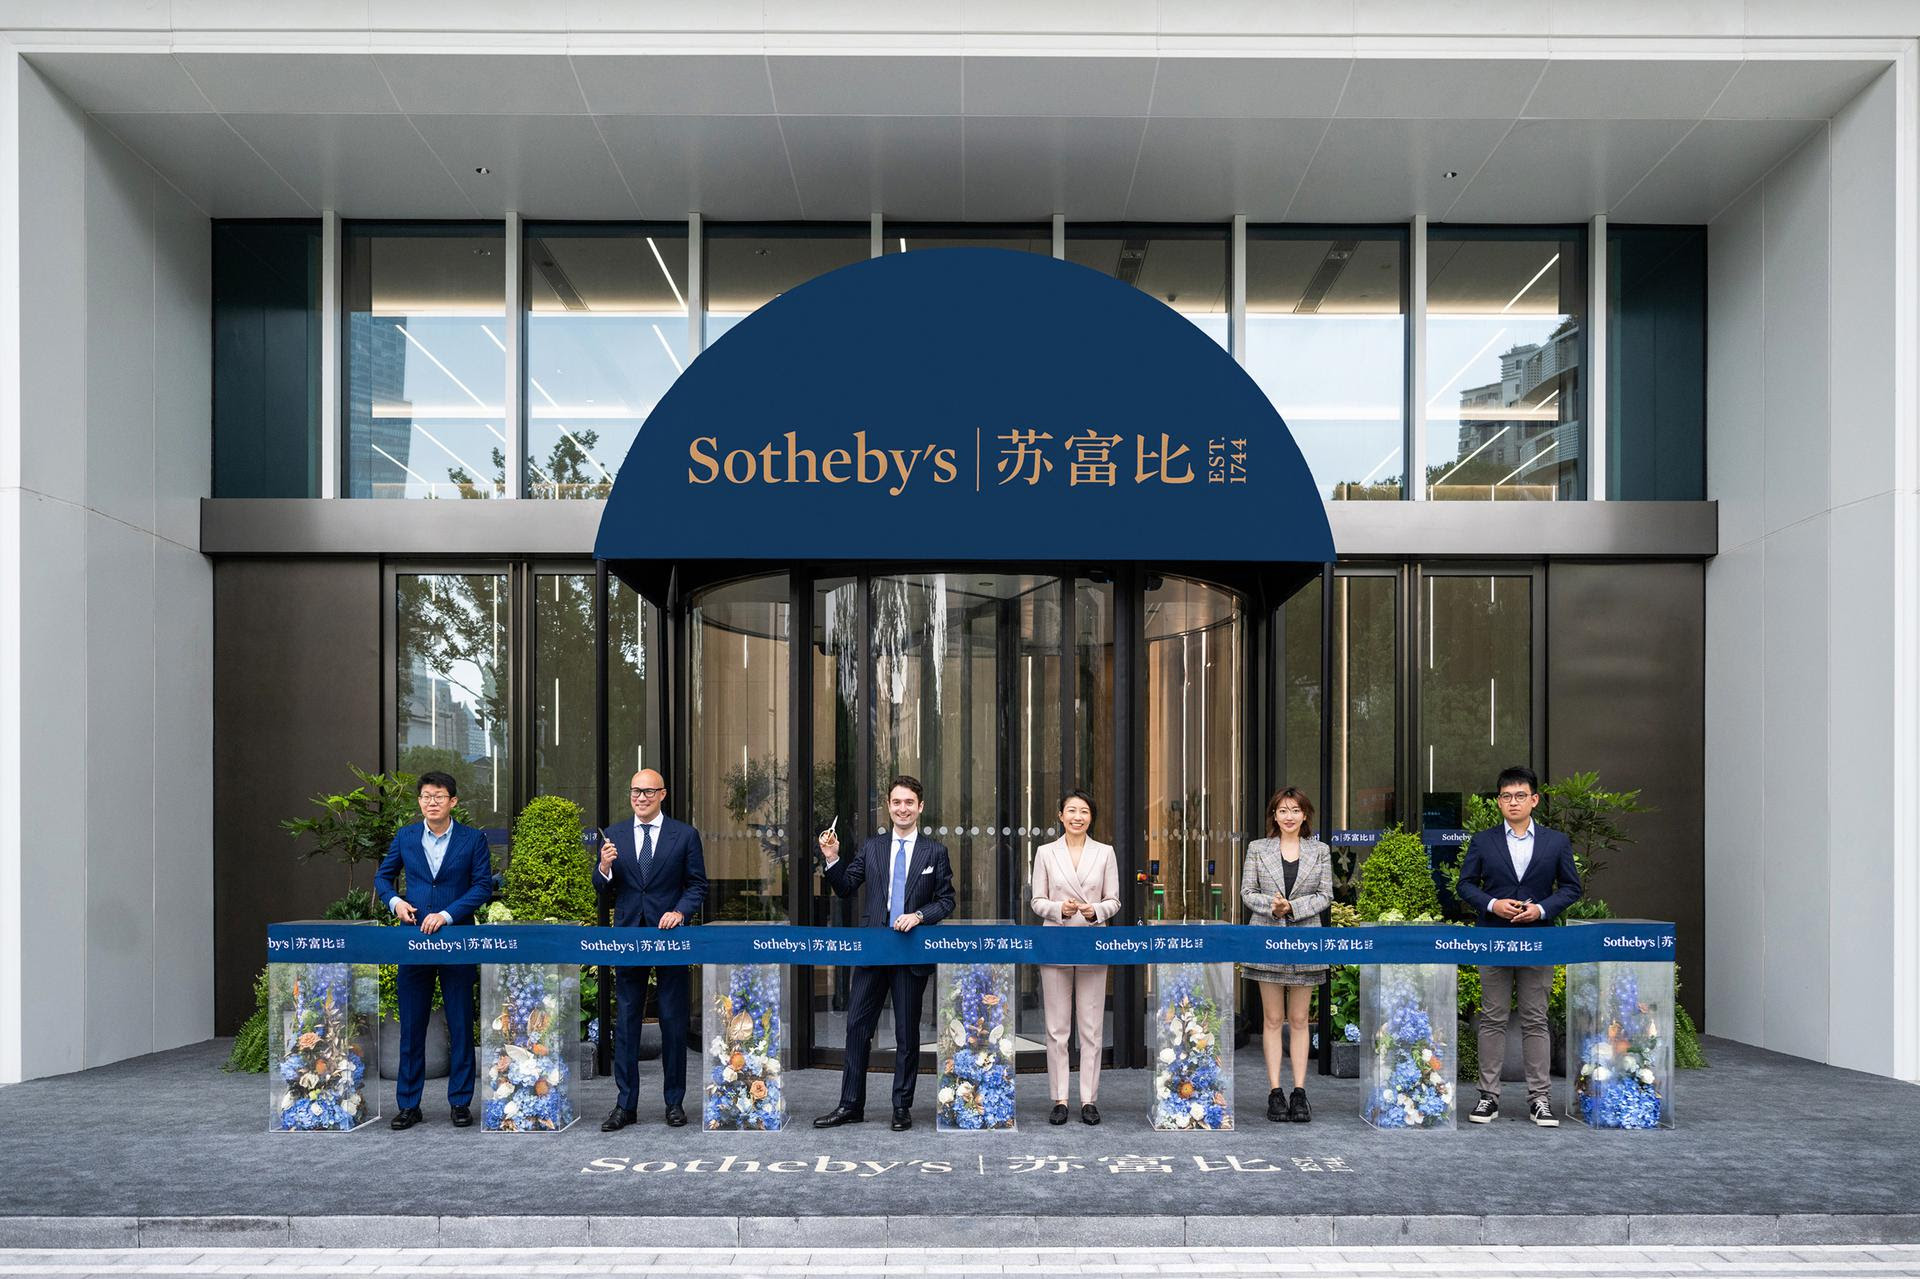 Sotheby’s. Aperto il nuovo spazio a Shanghai, insieme a Sotheby’s Buy Now che permette ai collezionisti cinesi offerte 24 ore su 24